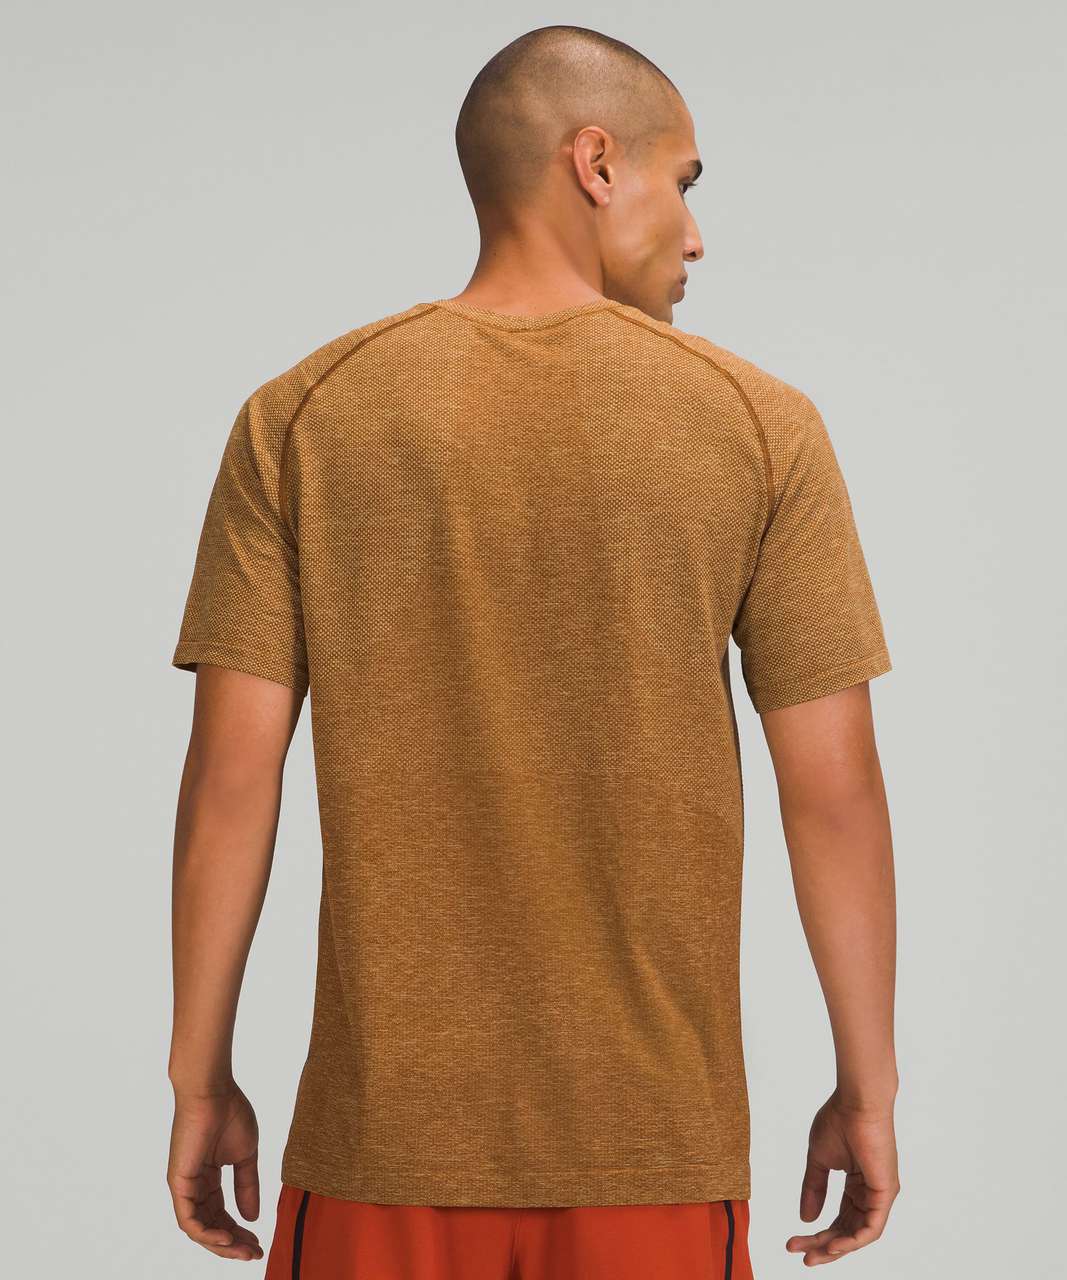 Lululemon Metal Vent Tech Short Sleeve Shirt 2.0 - Dew Green / Copper Brown